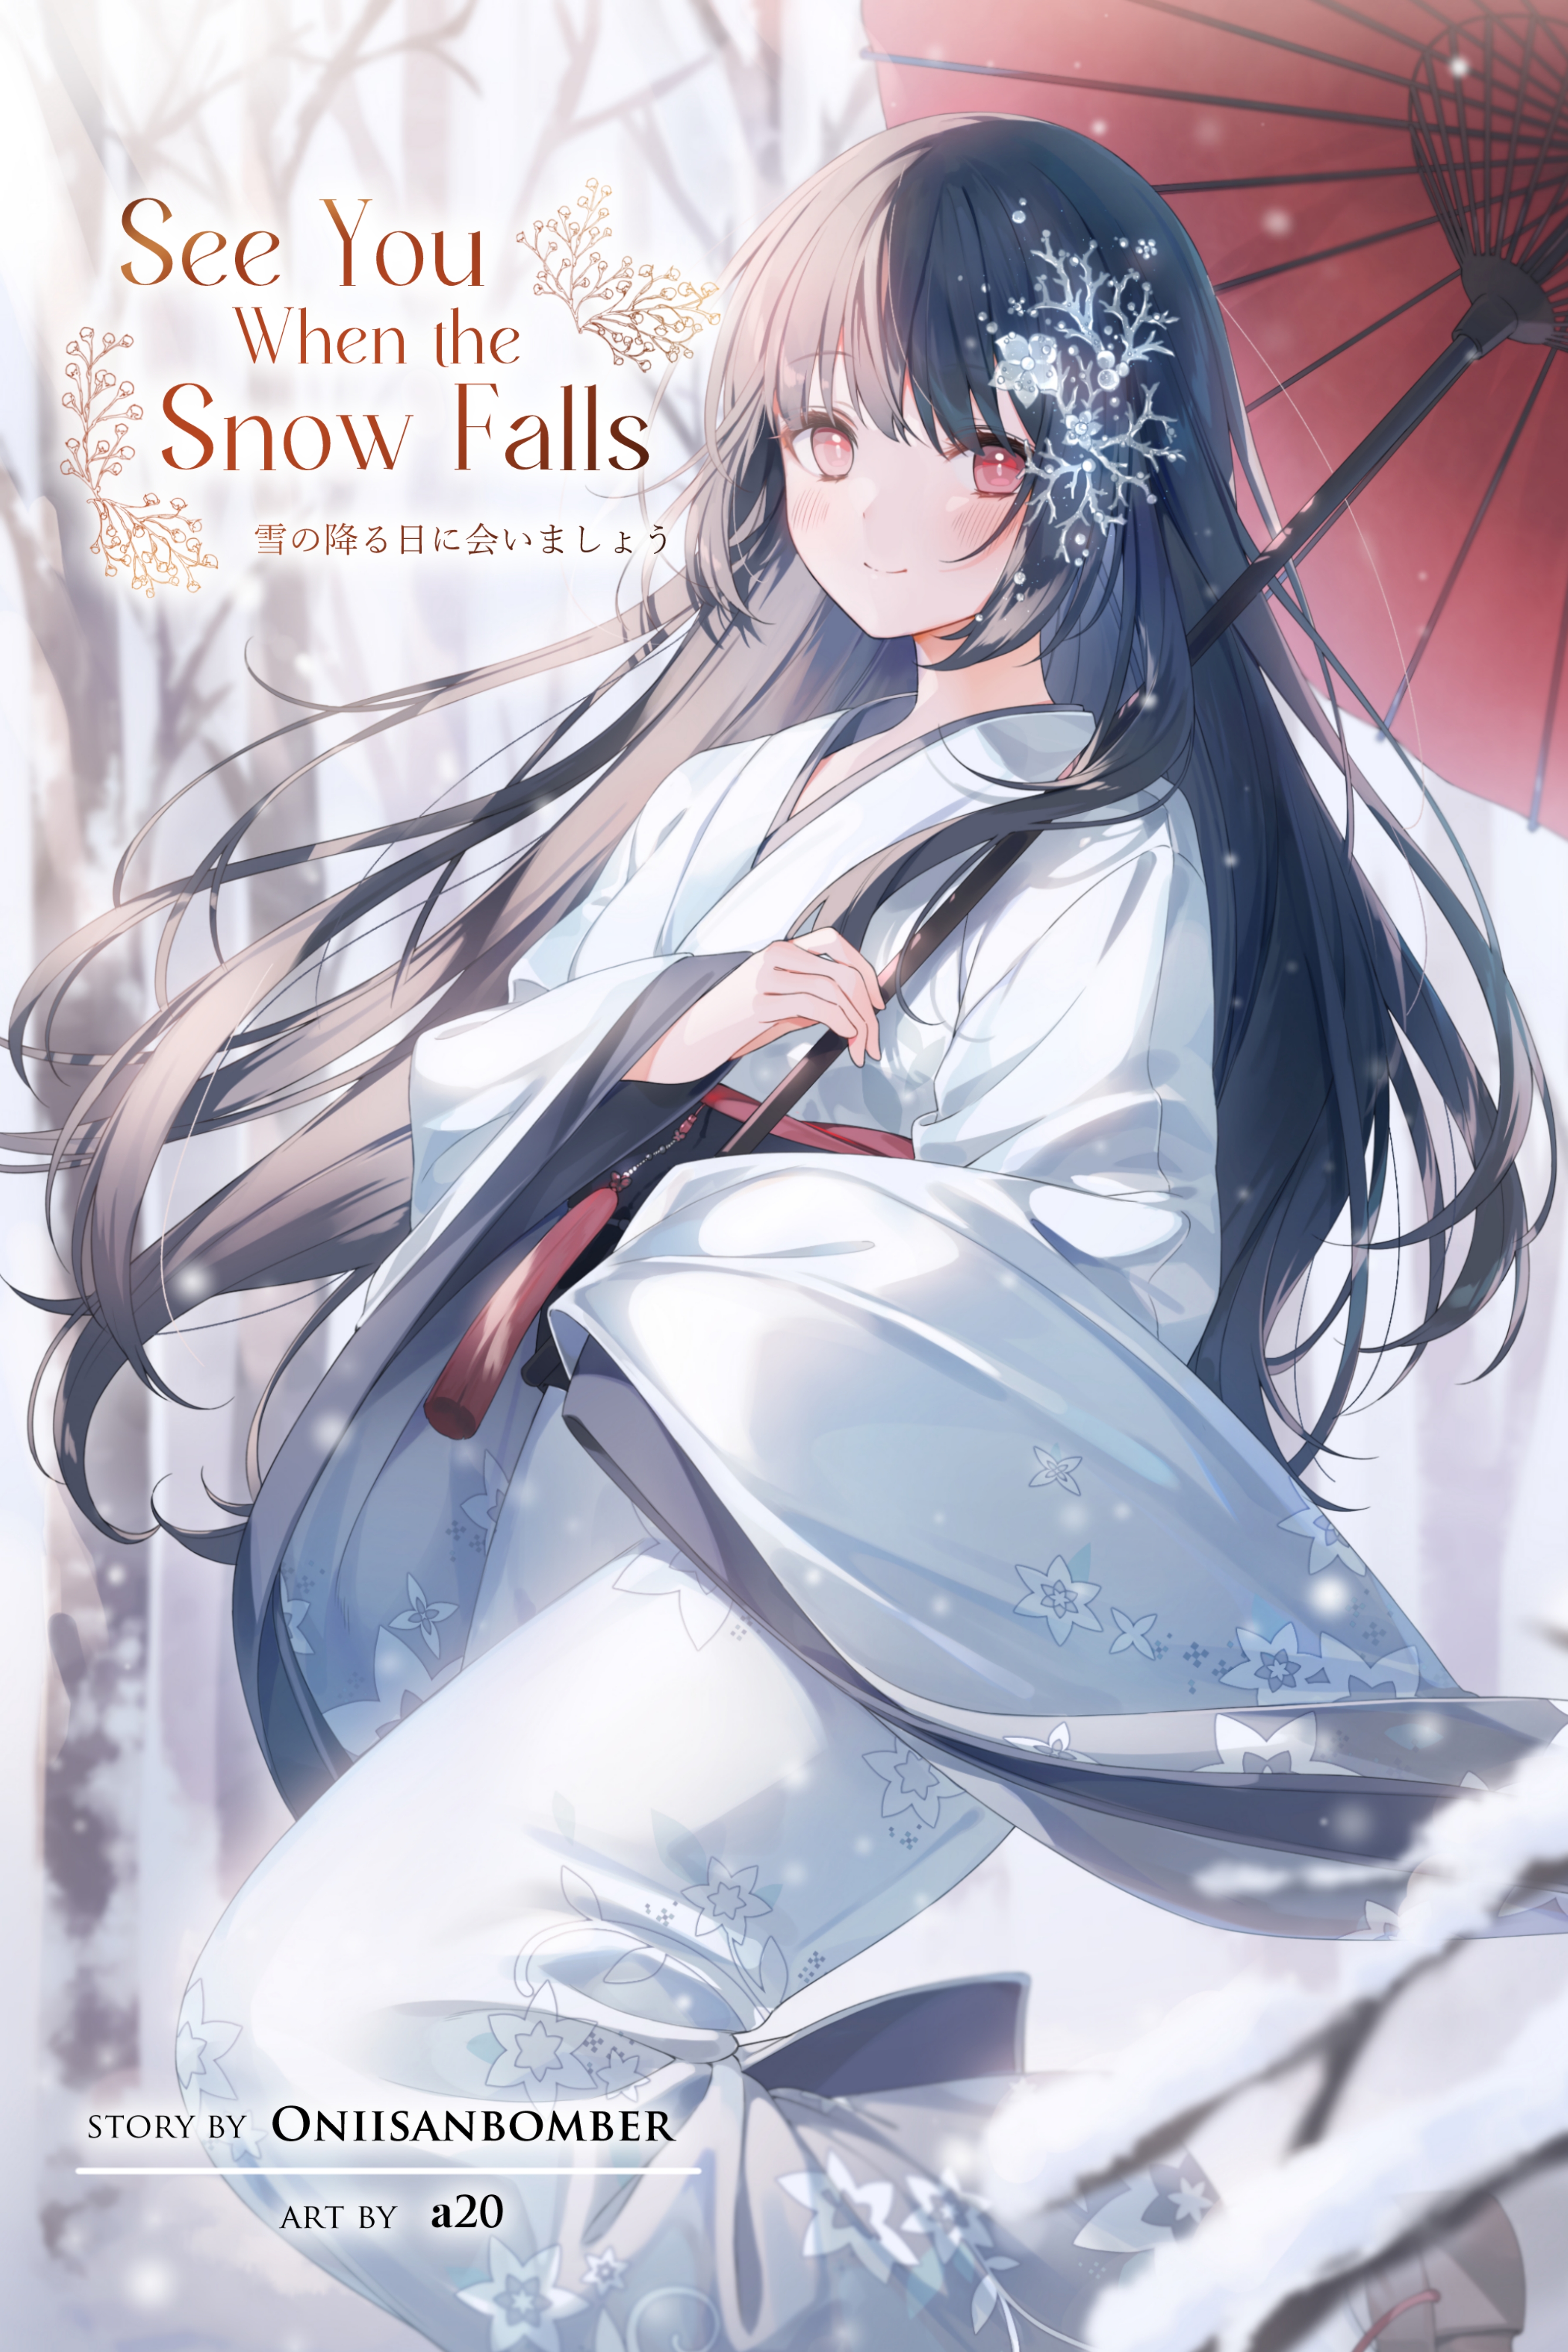 Das englische Cover zu "See You When the Snow Falls" das Bild zeigt ein Mädchen im Kimono mit einem roten Sonnenschirm.